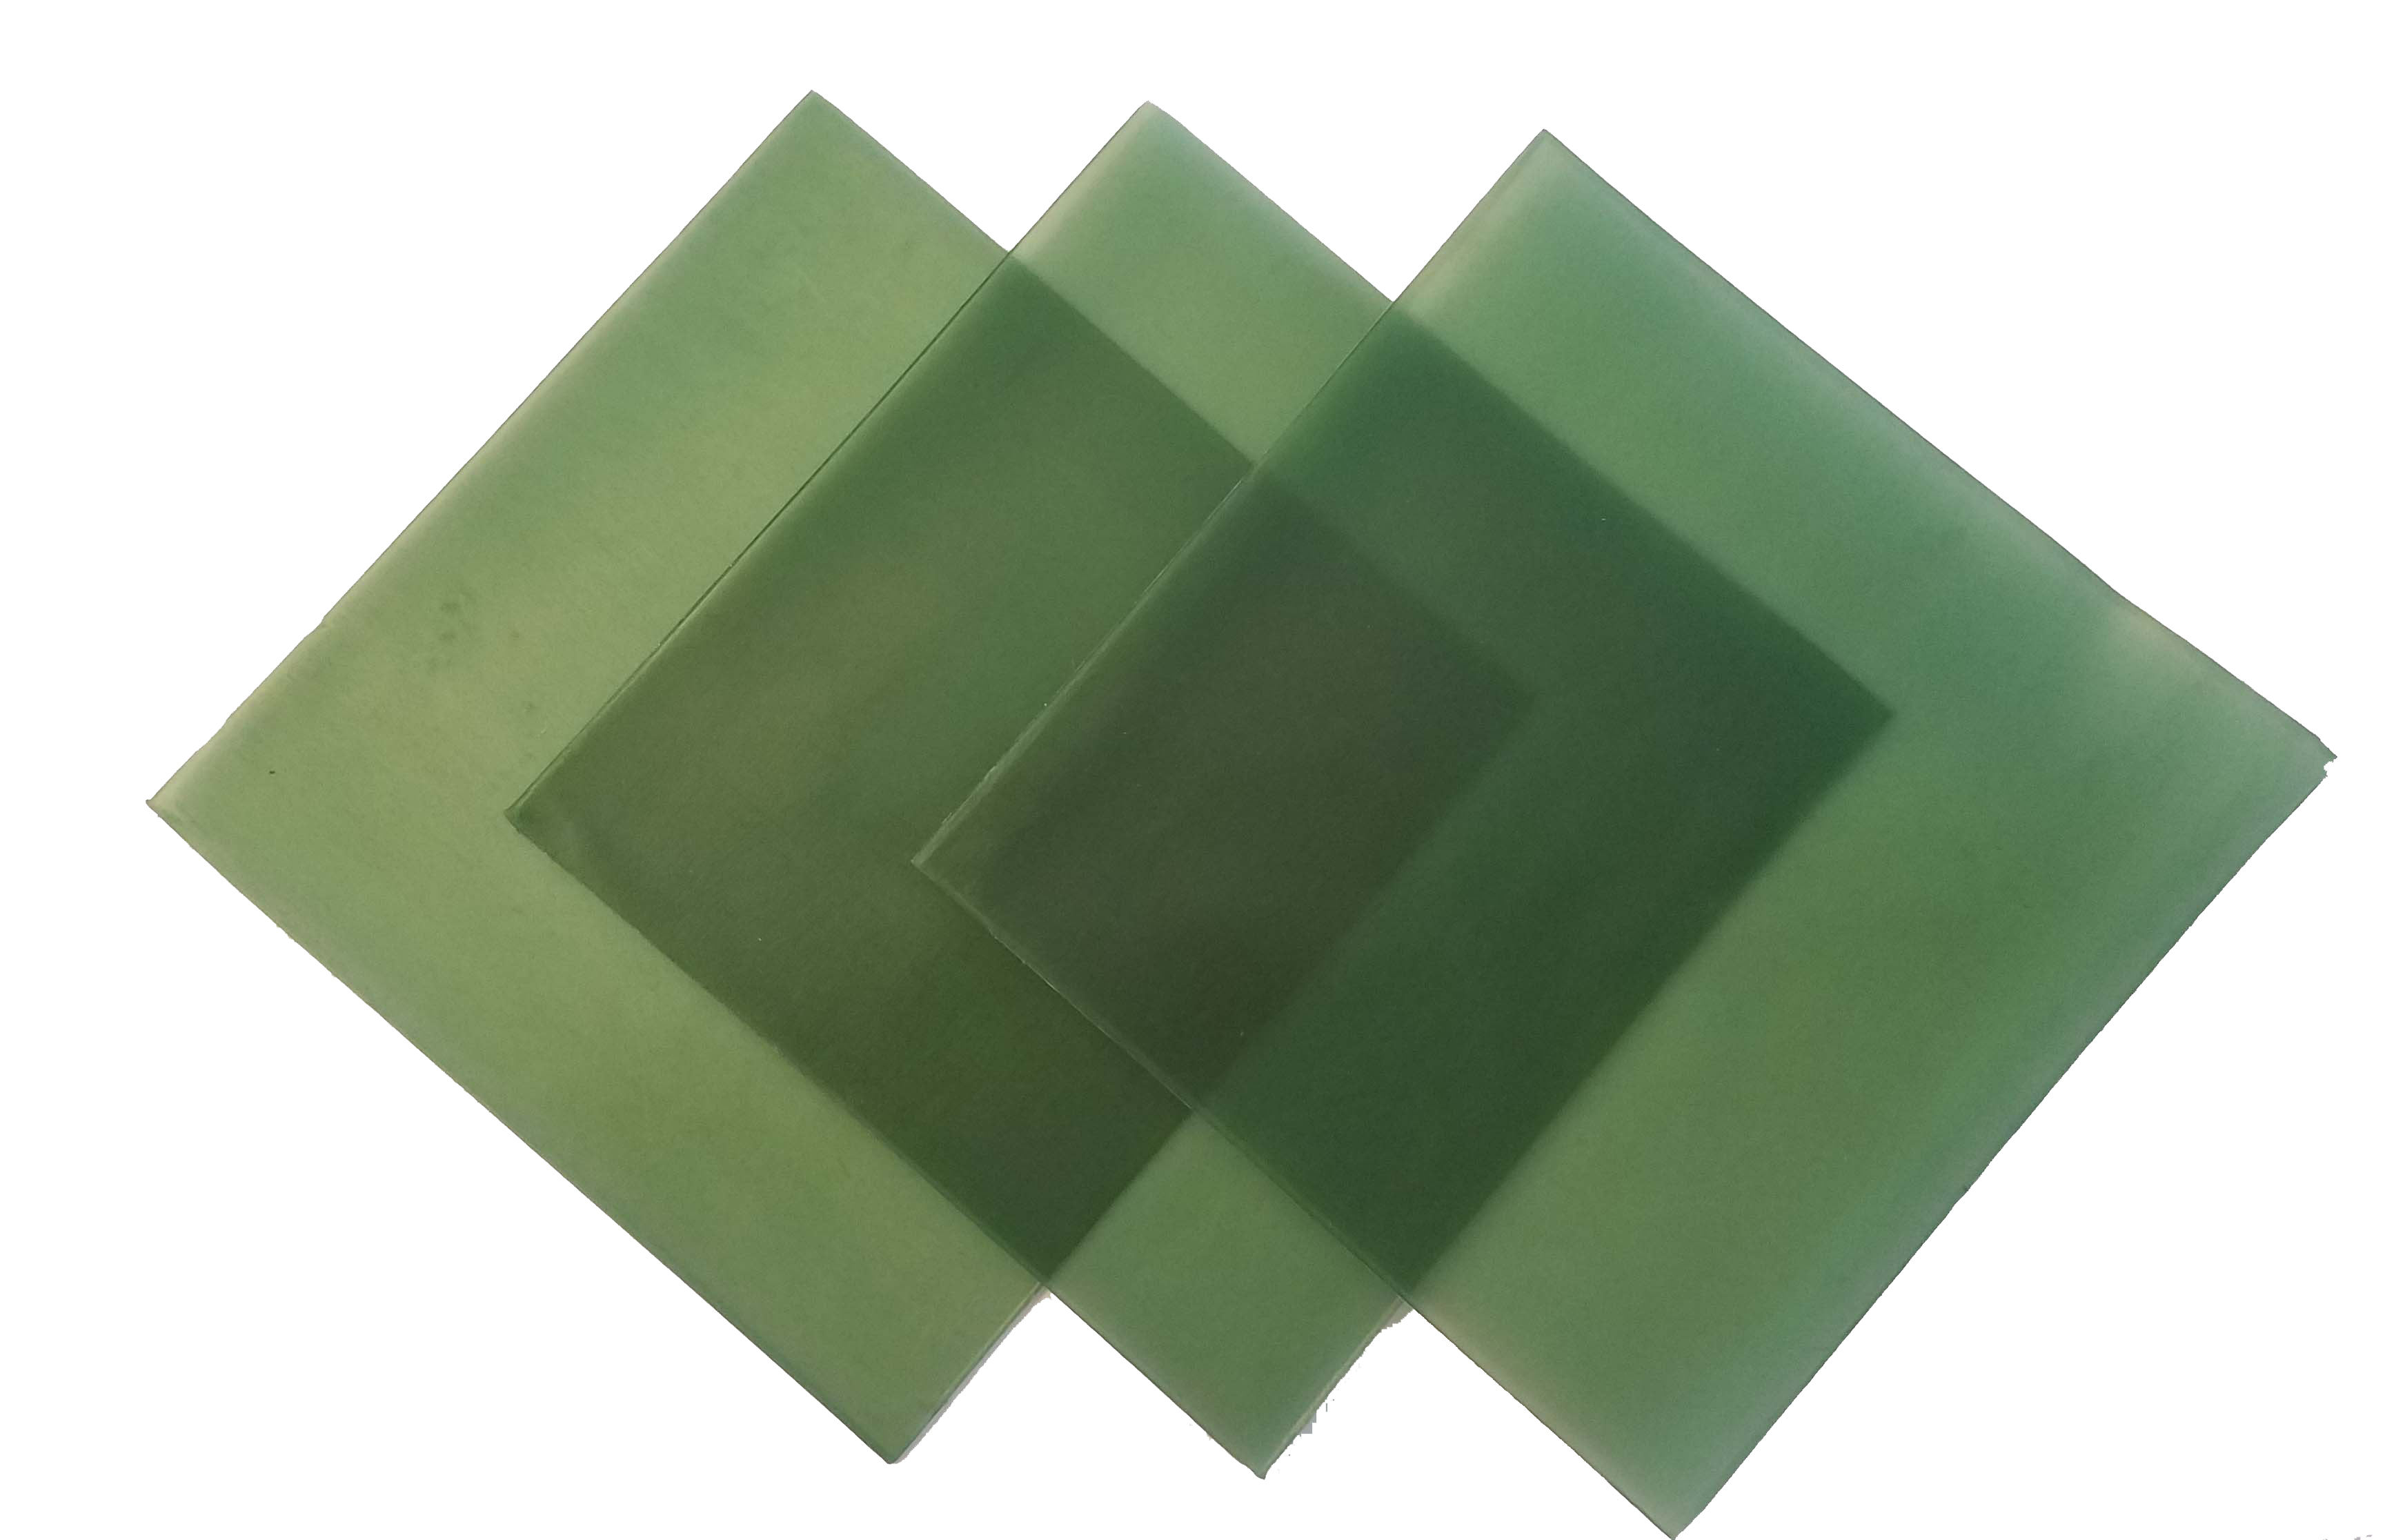 4\"x4\" sheet wax 20 gauge green